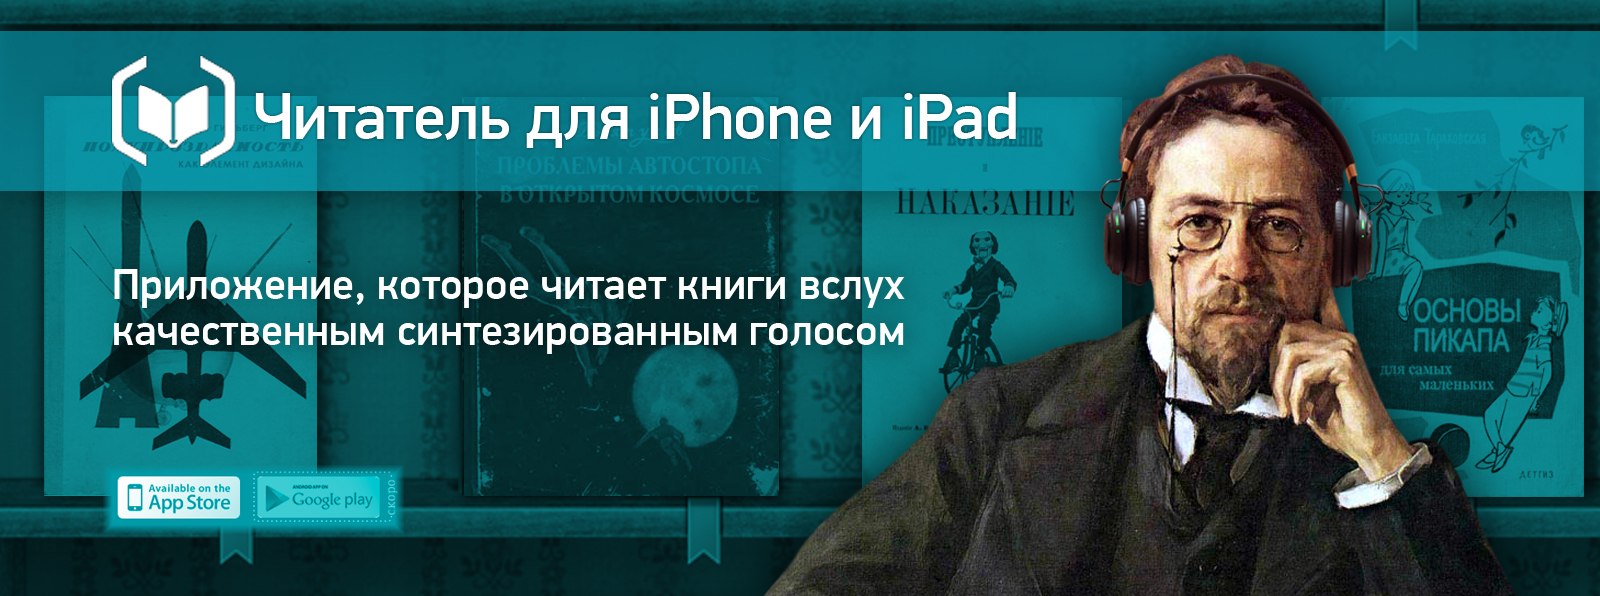 Вышла новая версия мобильного приложения «Читатель» для iOS